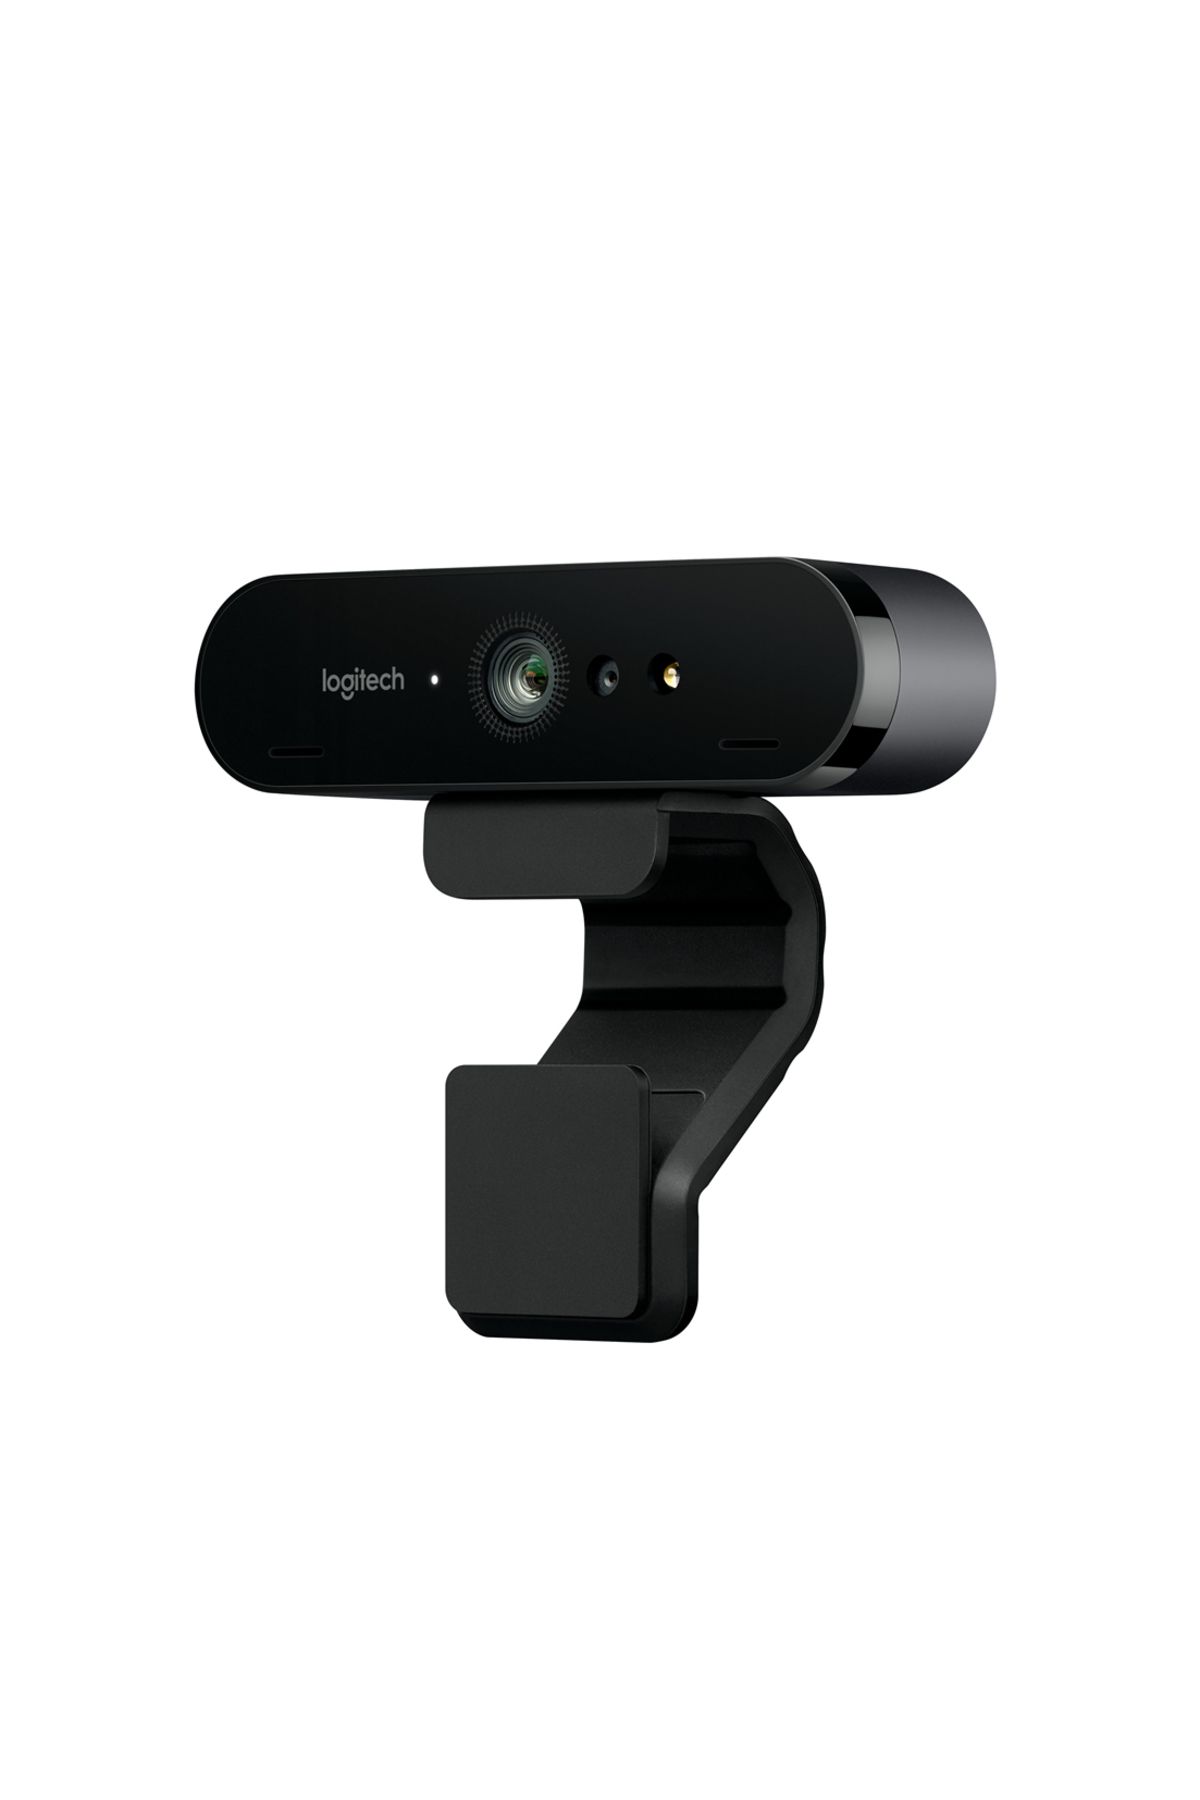 logitech V-u0040 960-001194 Brio 4k Ultra Stream Edition Webcam